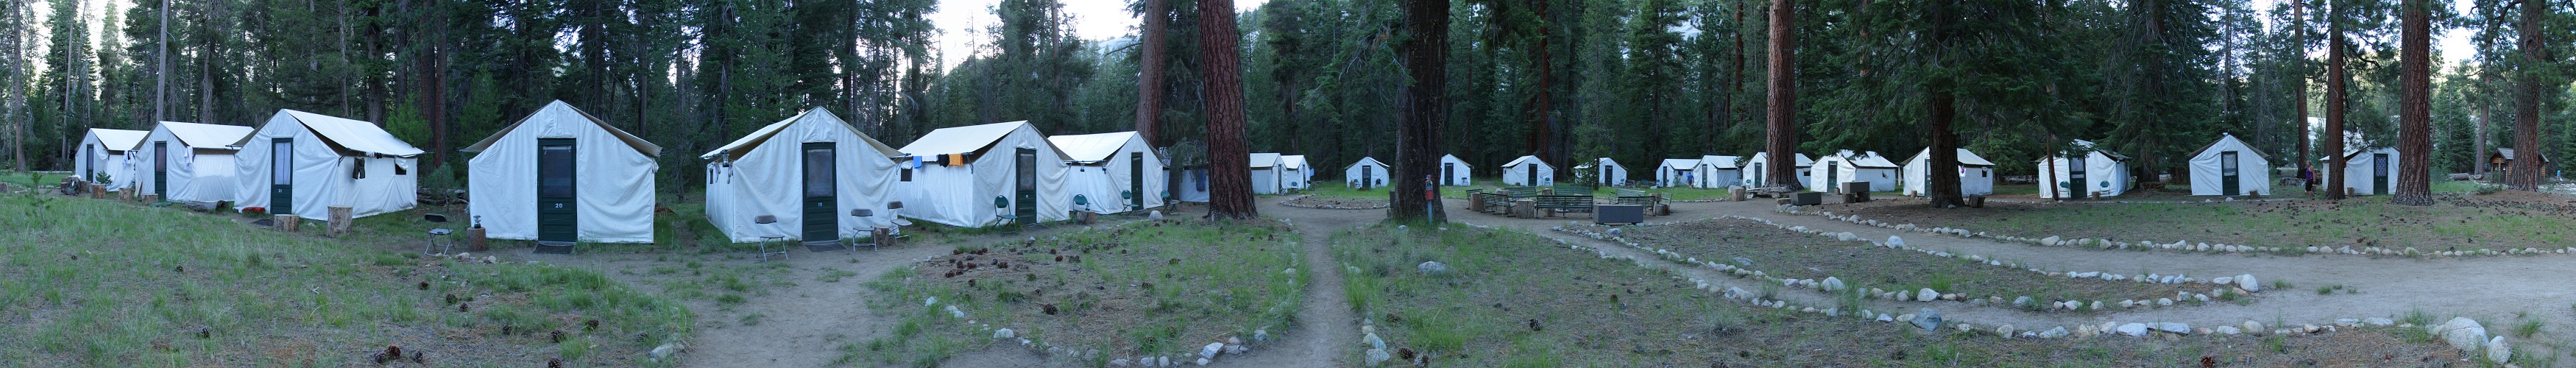 Merced Lake High Sierra Camp